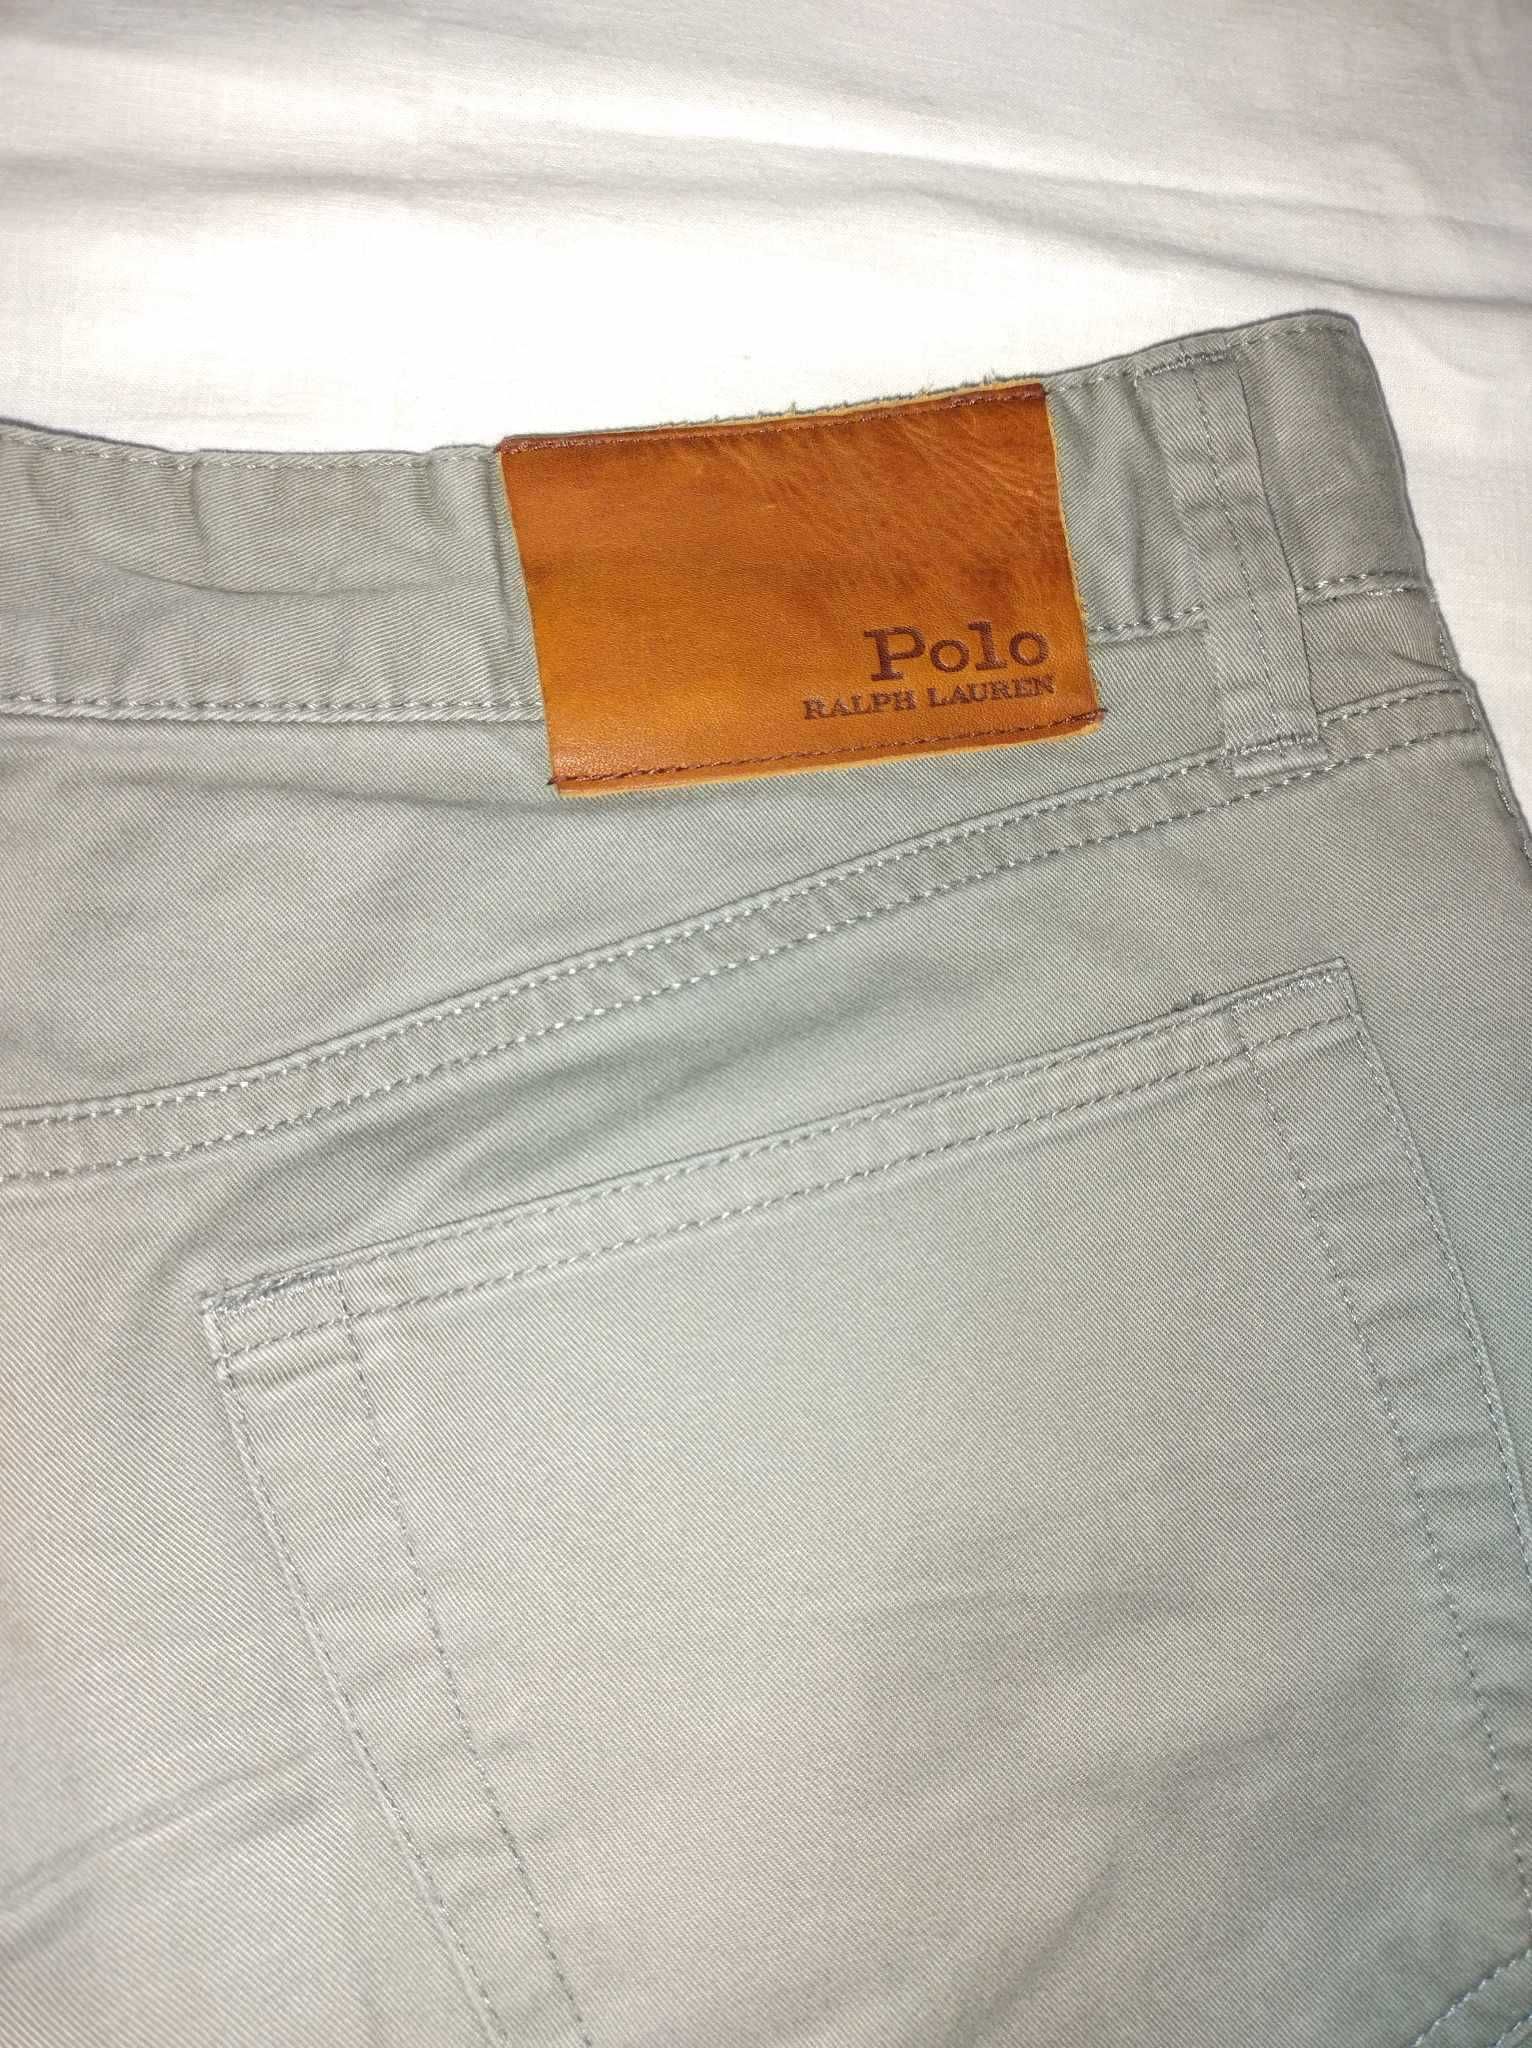 Męskie chinosy marki Polo Ralph Lauren w kolorze khaki/oliwkowym